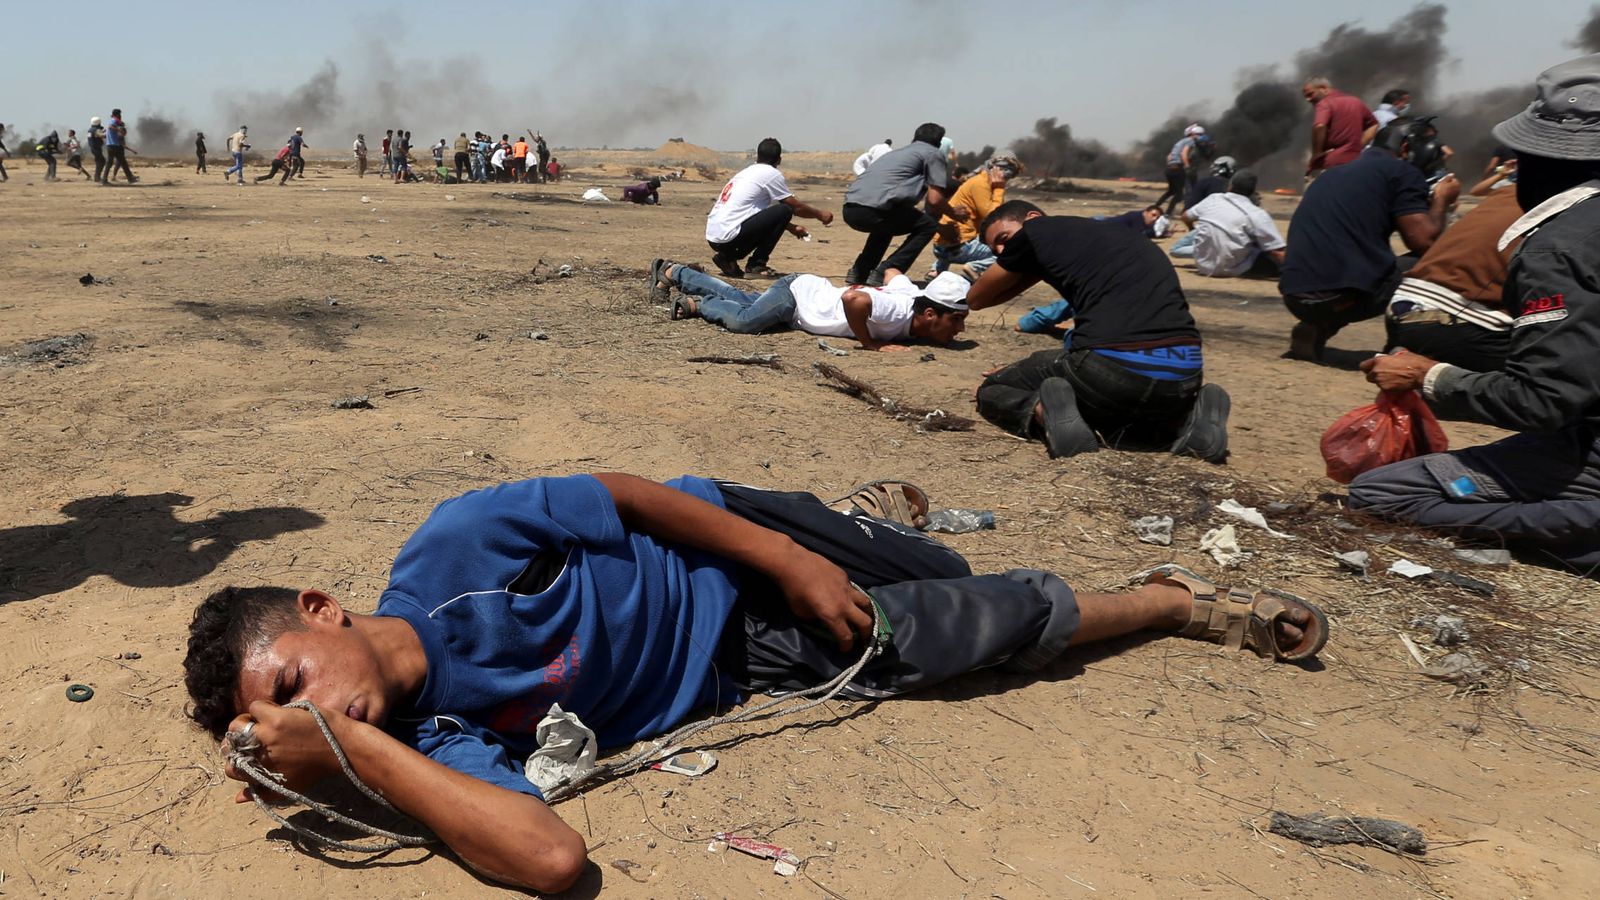 Foto: Manifestantes palestinos heridos por inhalación de gases durante la protesta en la frontera entre Israel y Gaza, el 8 de junio de 2018. (Reuters)